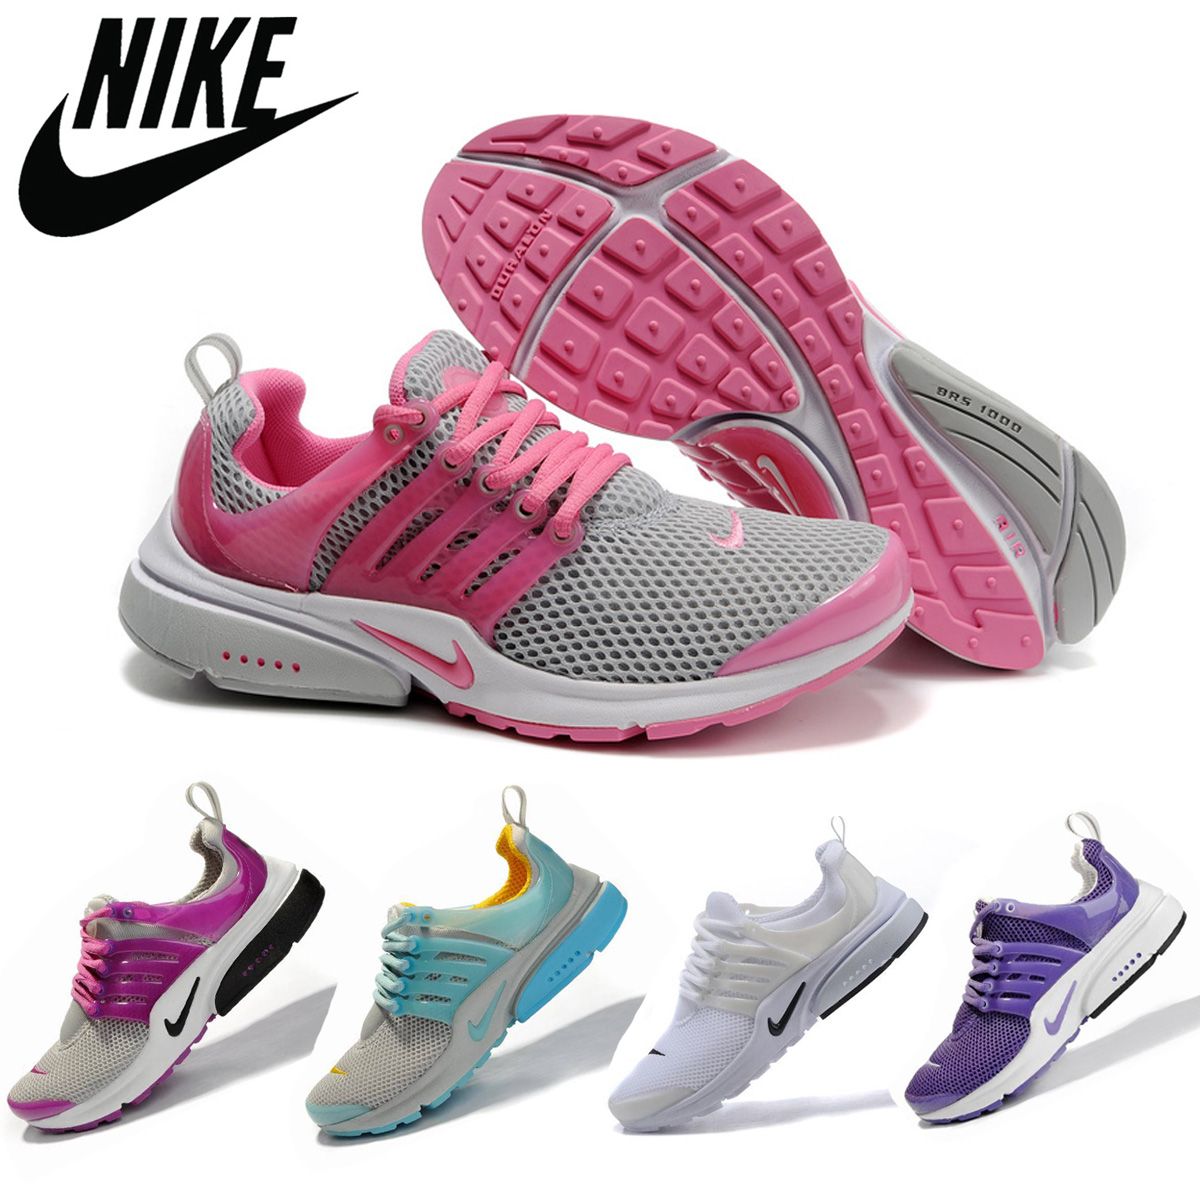 Impulso agrio giro Nike Air Presto BR QS Breathe para las mujeres de los zapatos corrientes,  original barato nueva